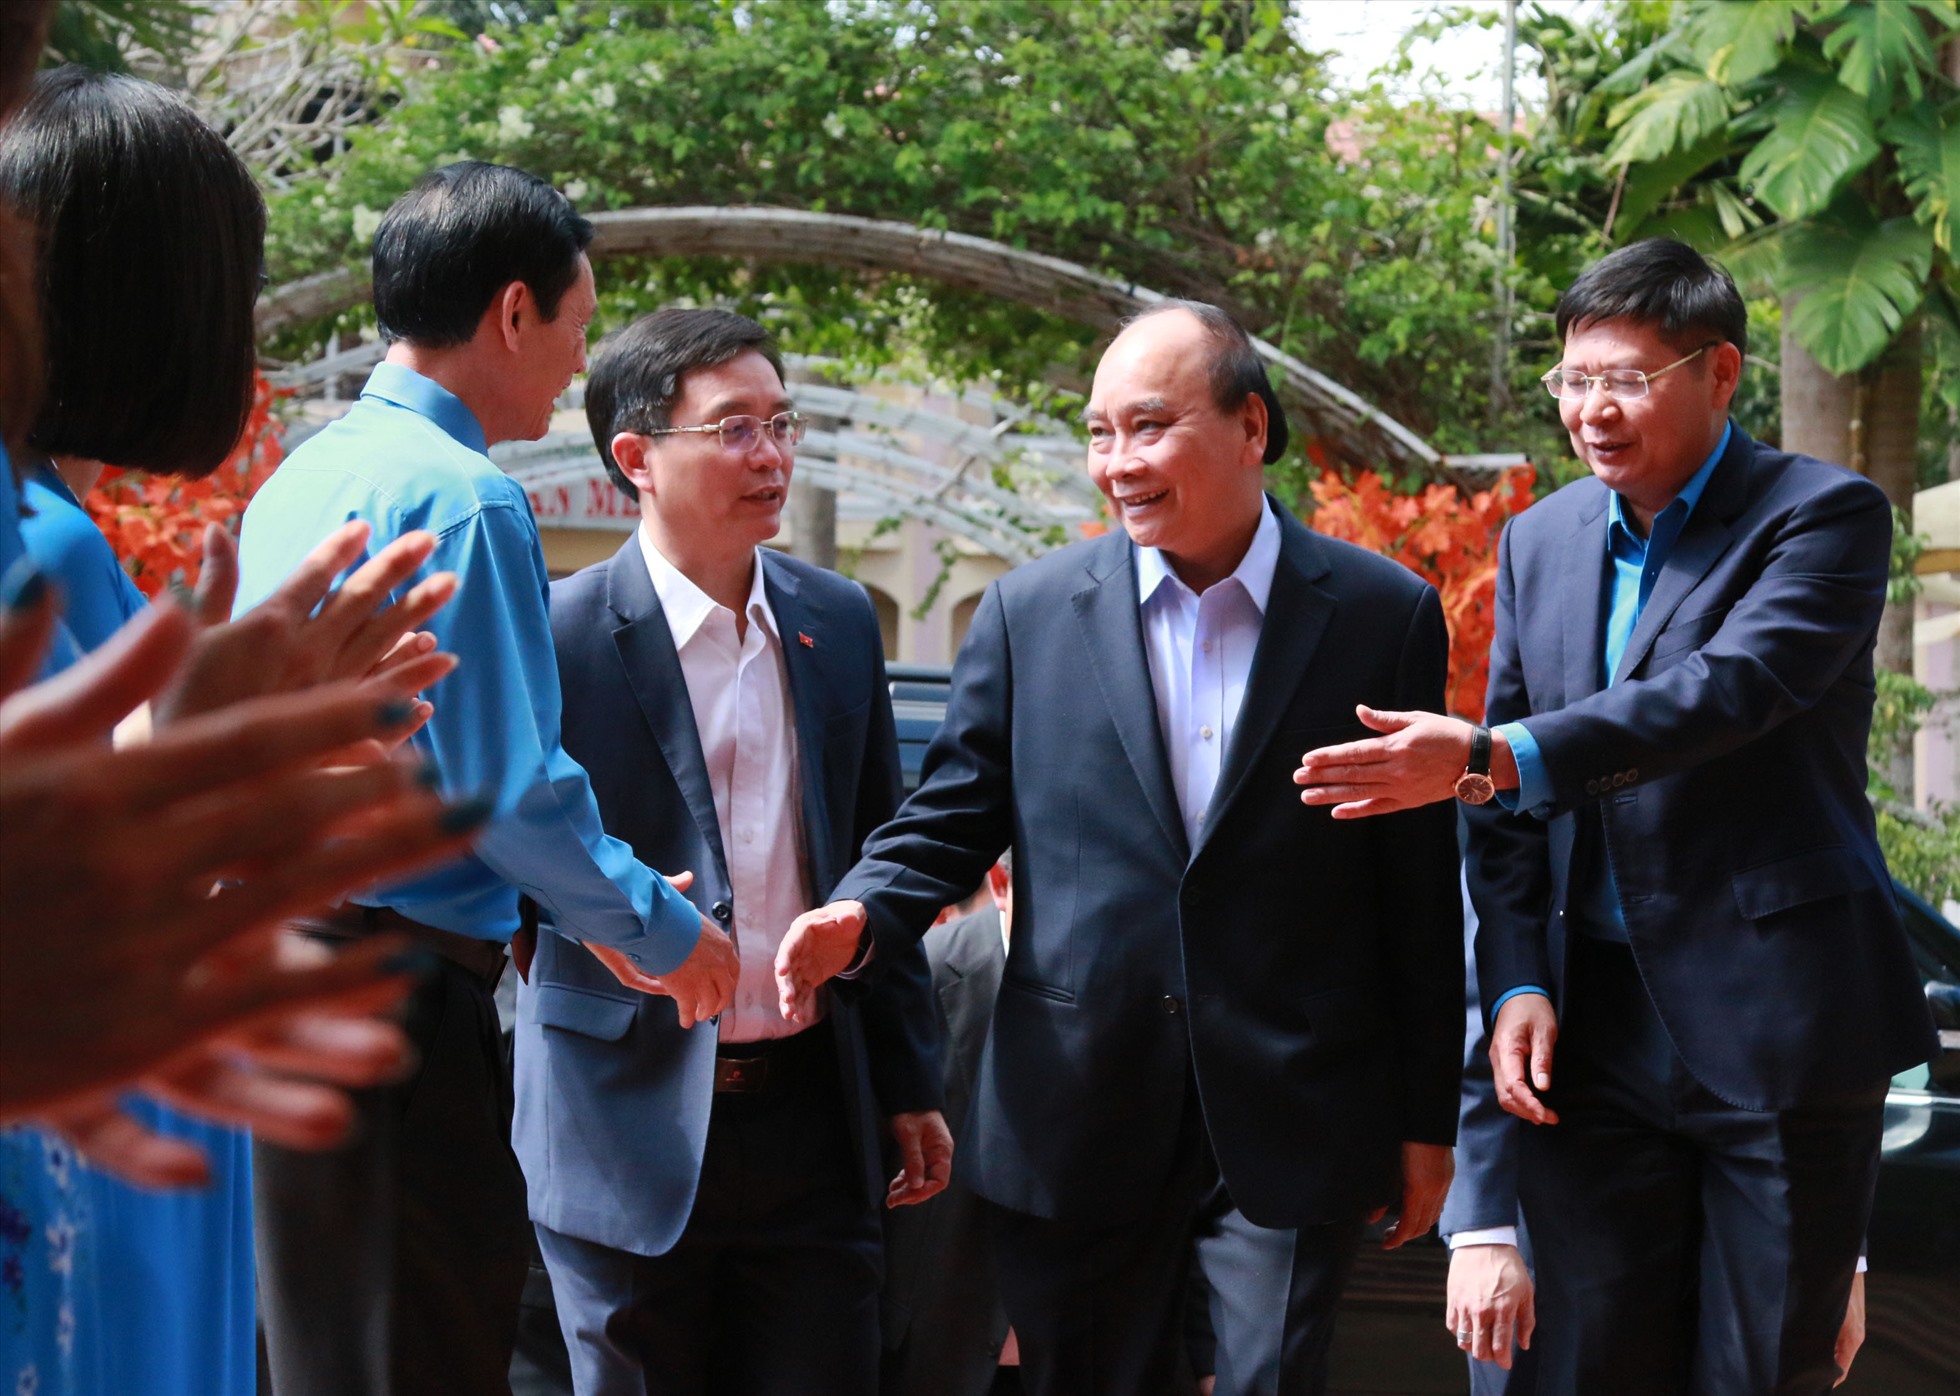 Chủ tịch nước Nguyễn Xuân Phúc bắt tay, hỏi thăm sức khỏe cán bộ Công đoàn tỉnh Đắk Lắk. Ảnh: Bảo Trung